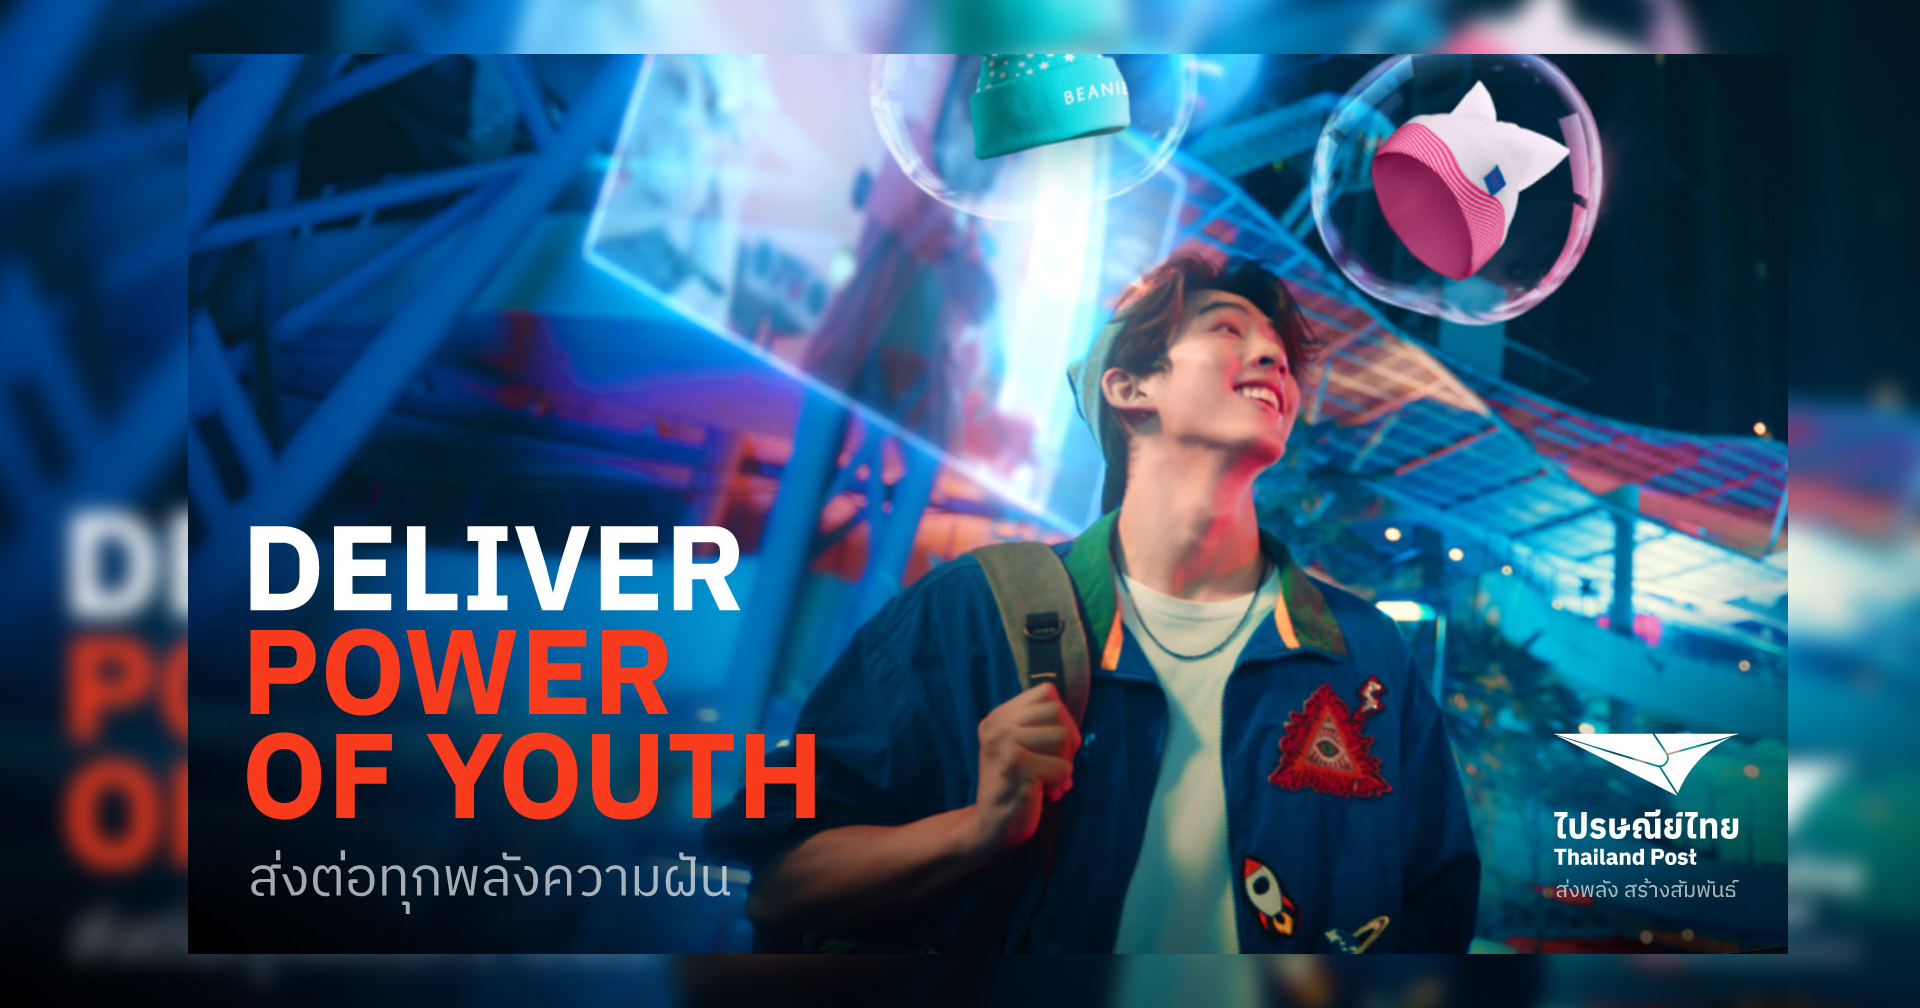 ไปรษณีย์ไทยเปิดตัวเว็บฟิล์มชุด “DELIVER POWER OF YOUTH ส่งพลังความฝัน ให้ไปไกล” นำพาคนรุ่นใหม่ให้สำเร็จทุกเส้นทาง